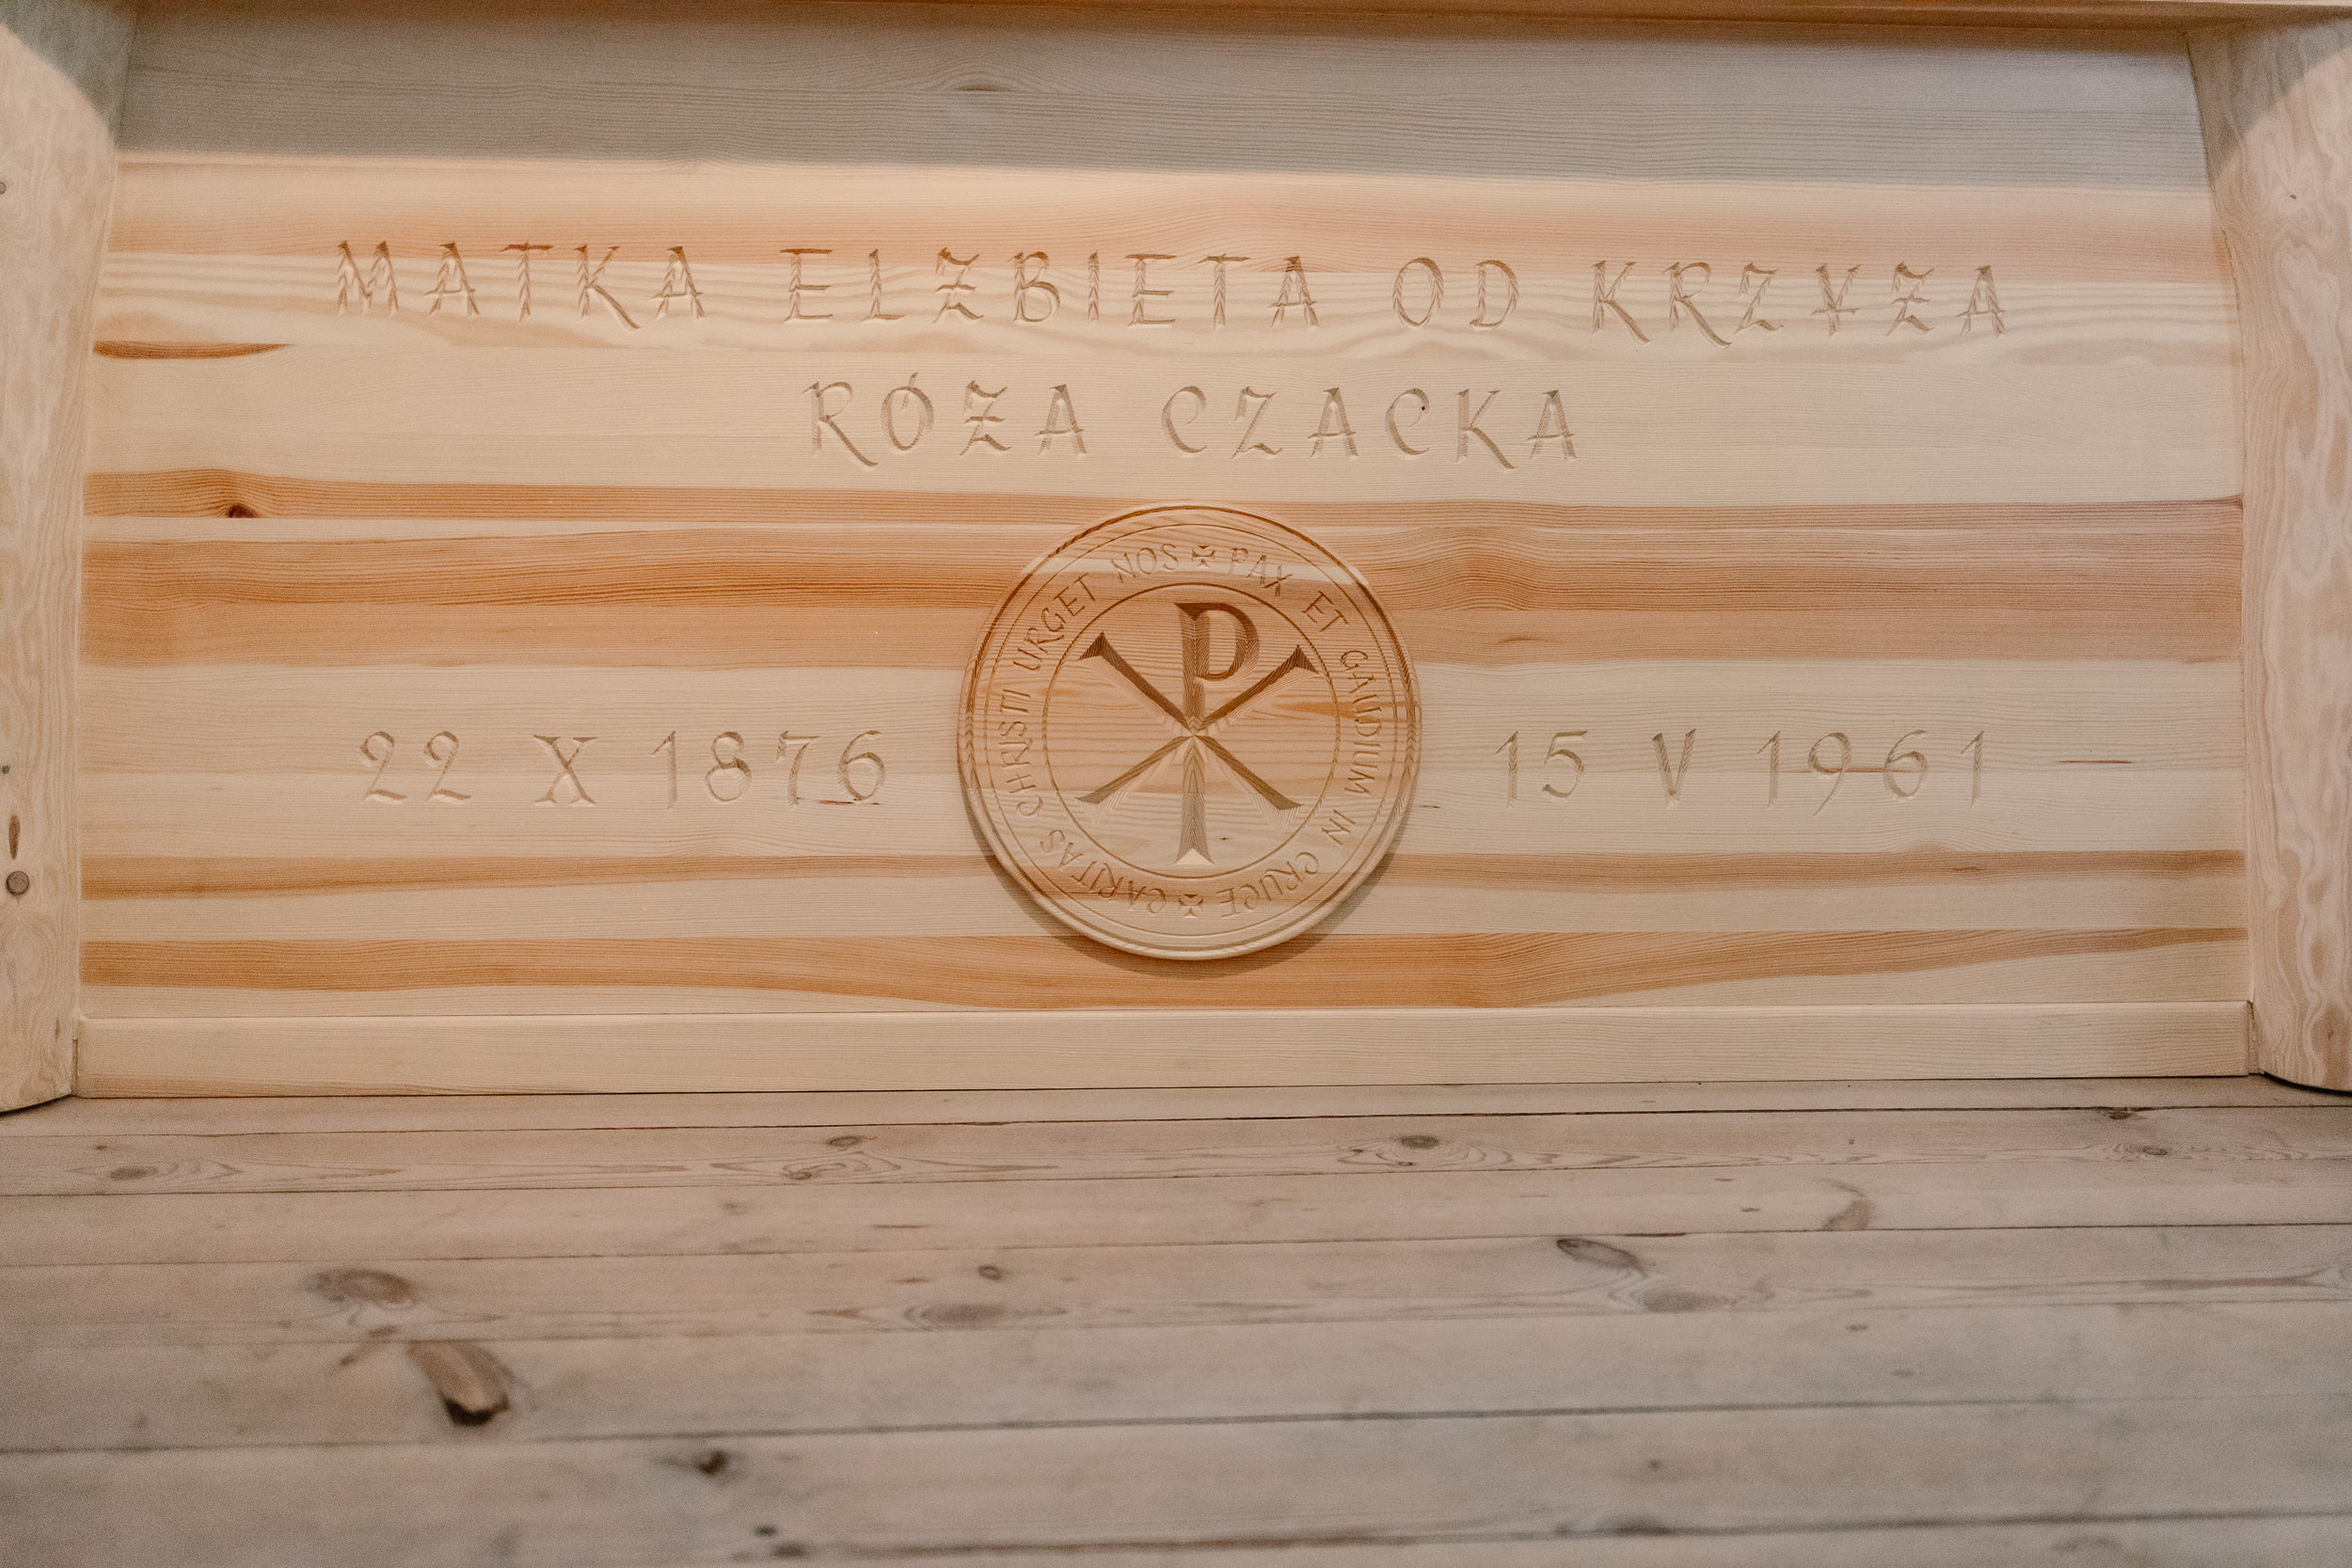 Napis na sarkofagu Matki Czackiej: Matka Elżbieta od Krzyża, Róża Czacka, 22 X 1876 - 15 V 1961. W środku herb zgromadzenia.